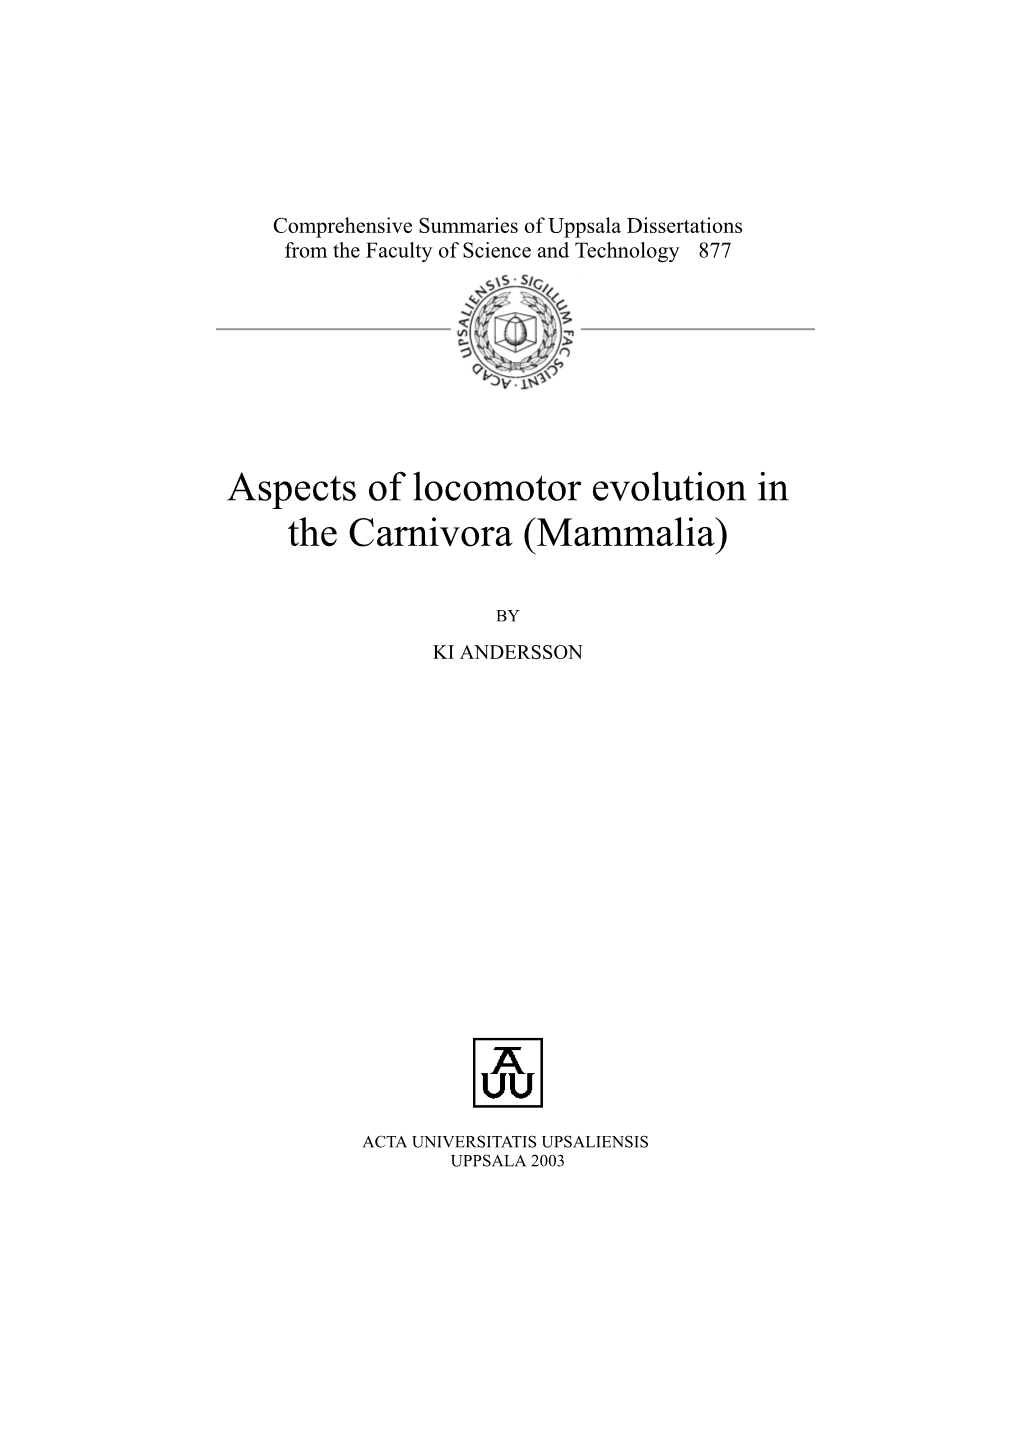 Aspects of Locomotor Evolution in the Carnivora (Mammalia)